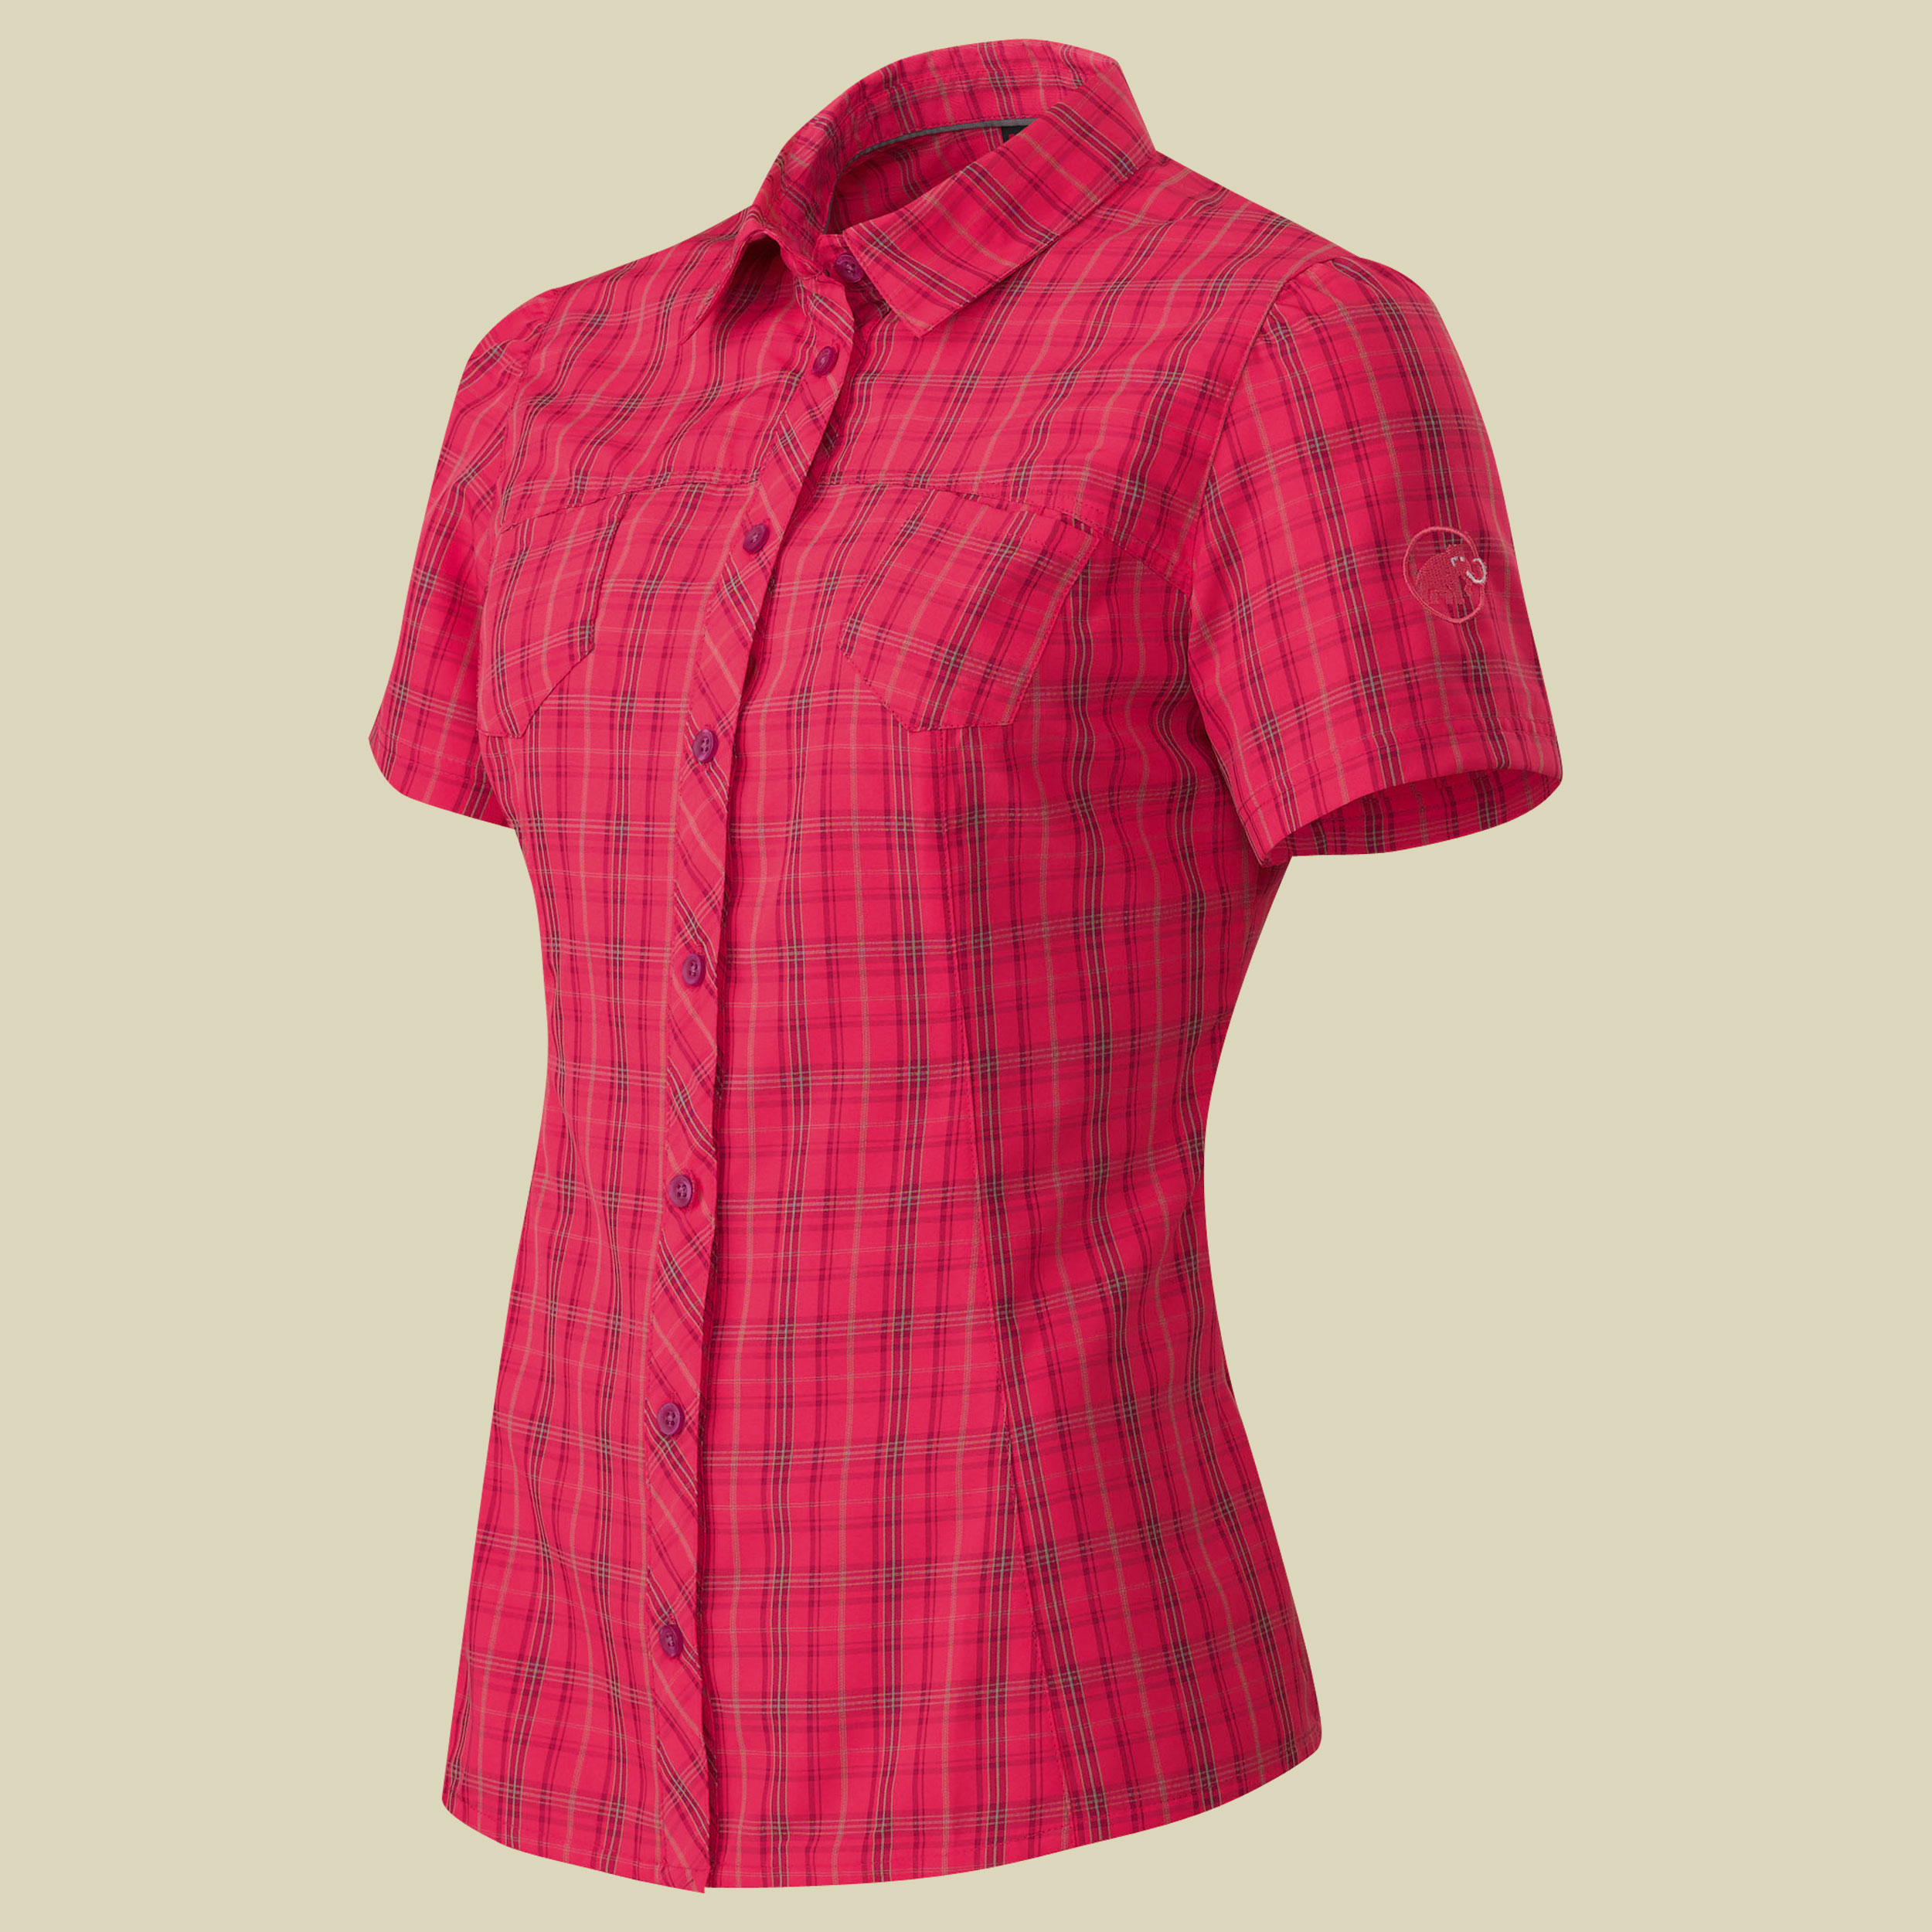 Aada Shirt Women Größe S Farbe raspberry